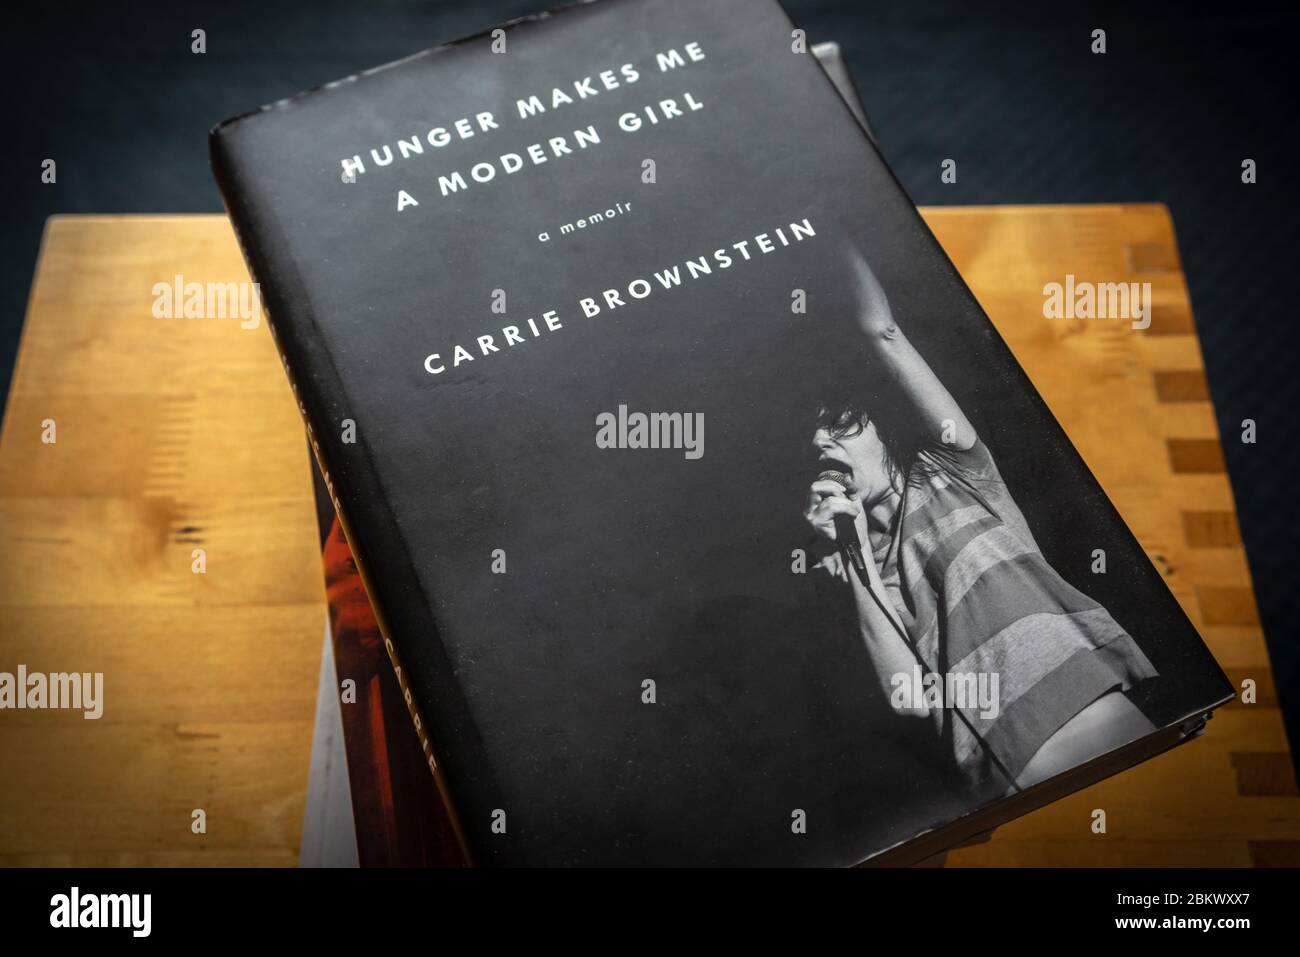 Un exemplaire de « Hunger fait de moi une fille moderne » - un livre de Carrie Brownstein sur une pile de livres Banque D'Images